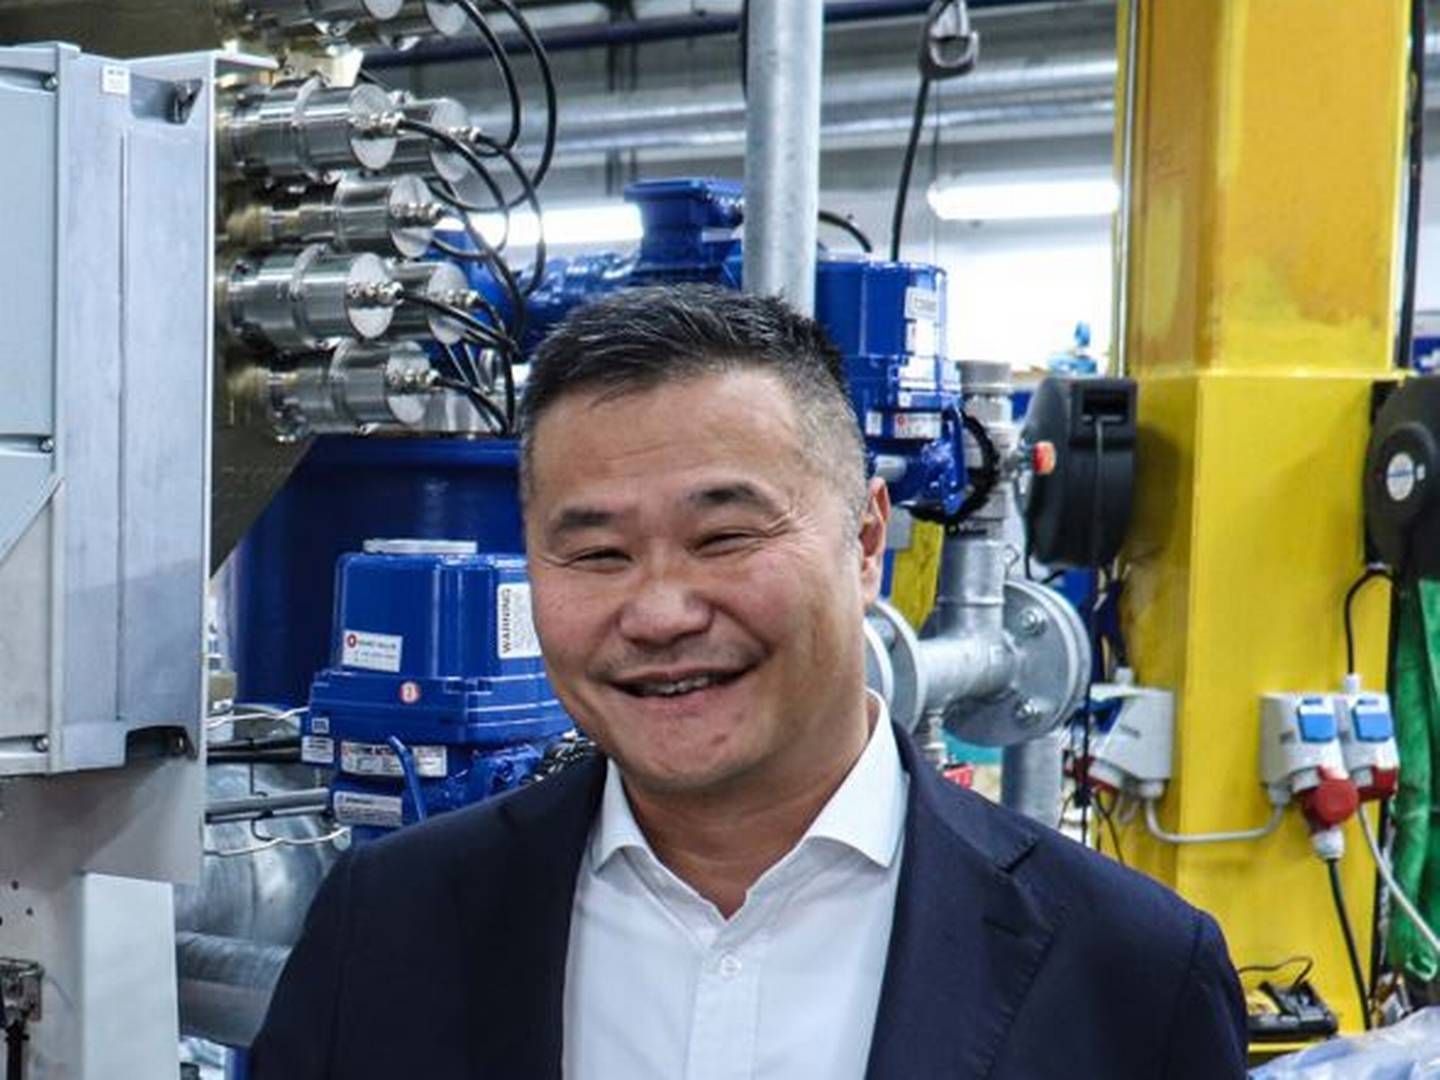 Humphrey Lau, med erfaring fra bl.a. Grundfos, overtog posten som CEO den 1. december 2022 efter Henrik Sørensen. | Foto: Desmi